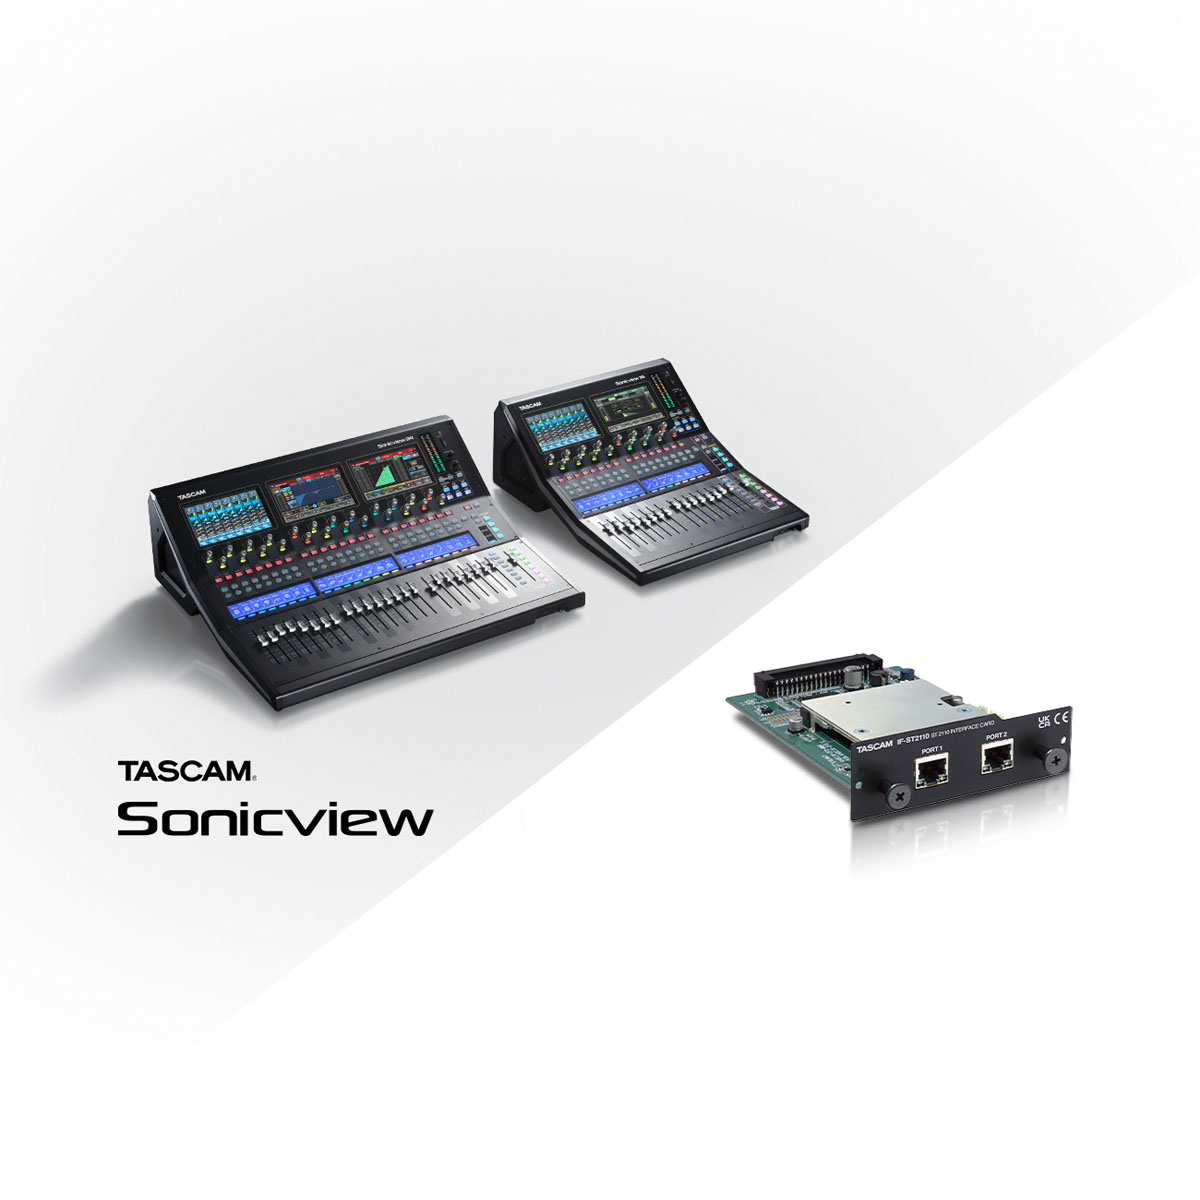 業務用デジタルミキサーTASCAM Sonicviewシリーズに対応。 SMPTE ST 2110に準拠したオプションインターフェースカード『IF-ST2110』を開発。